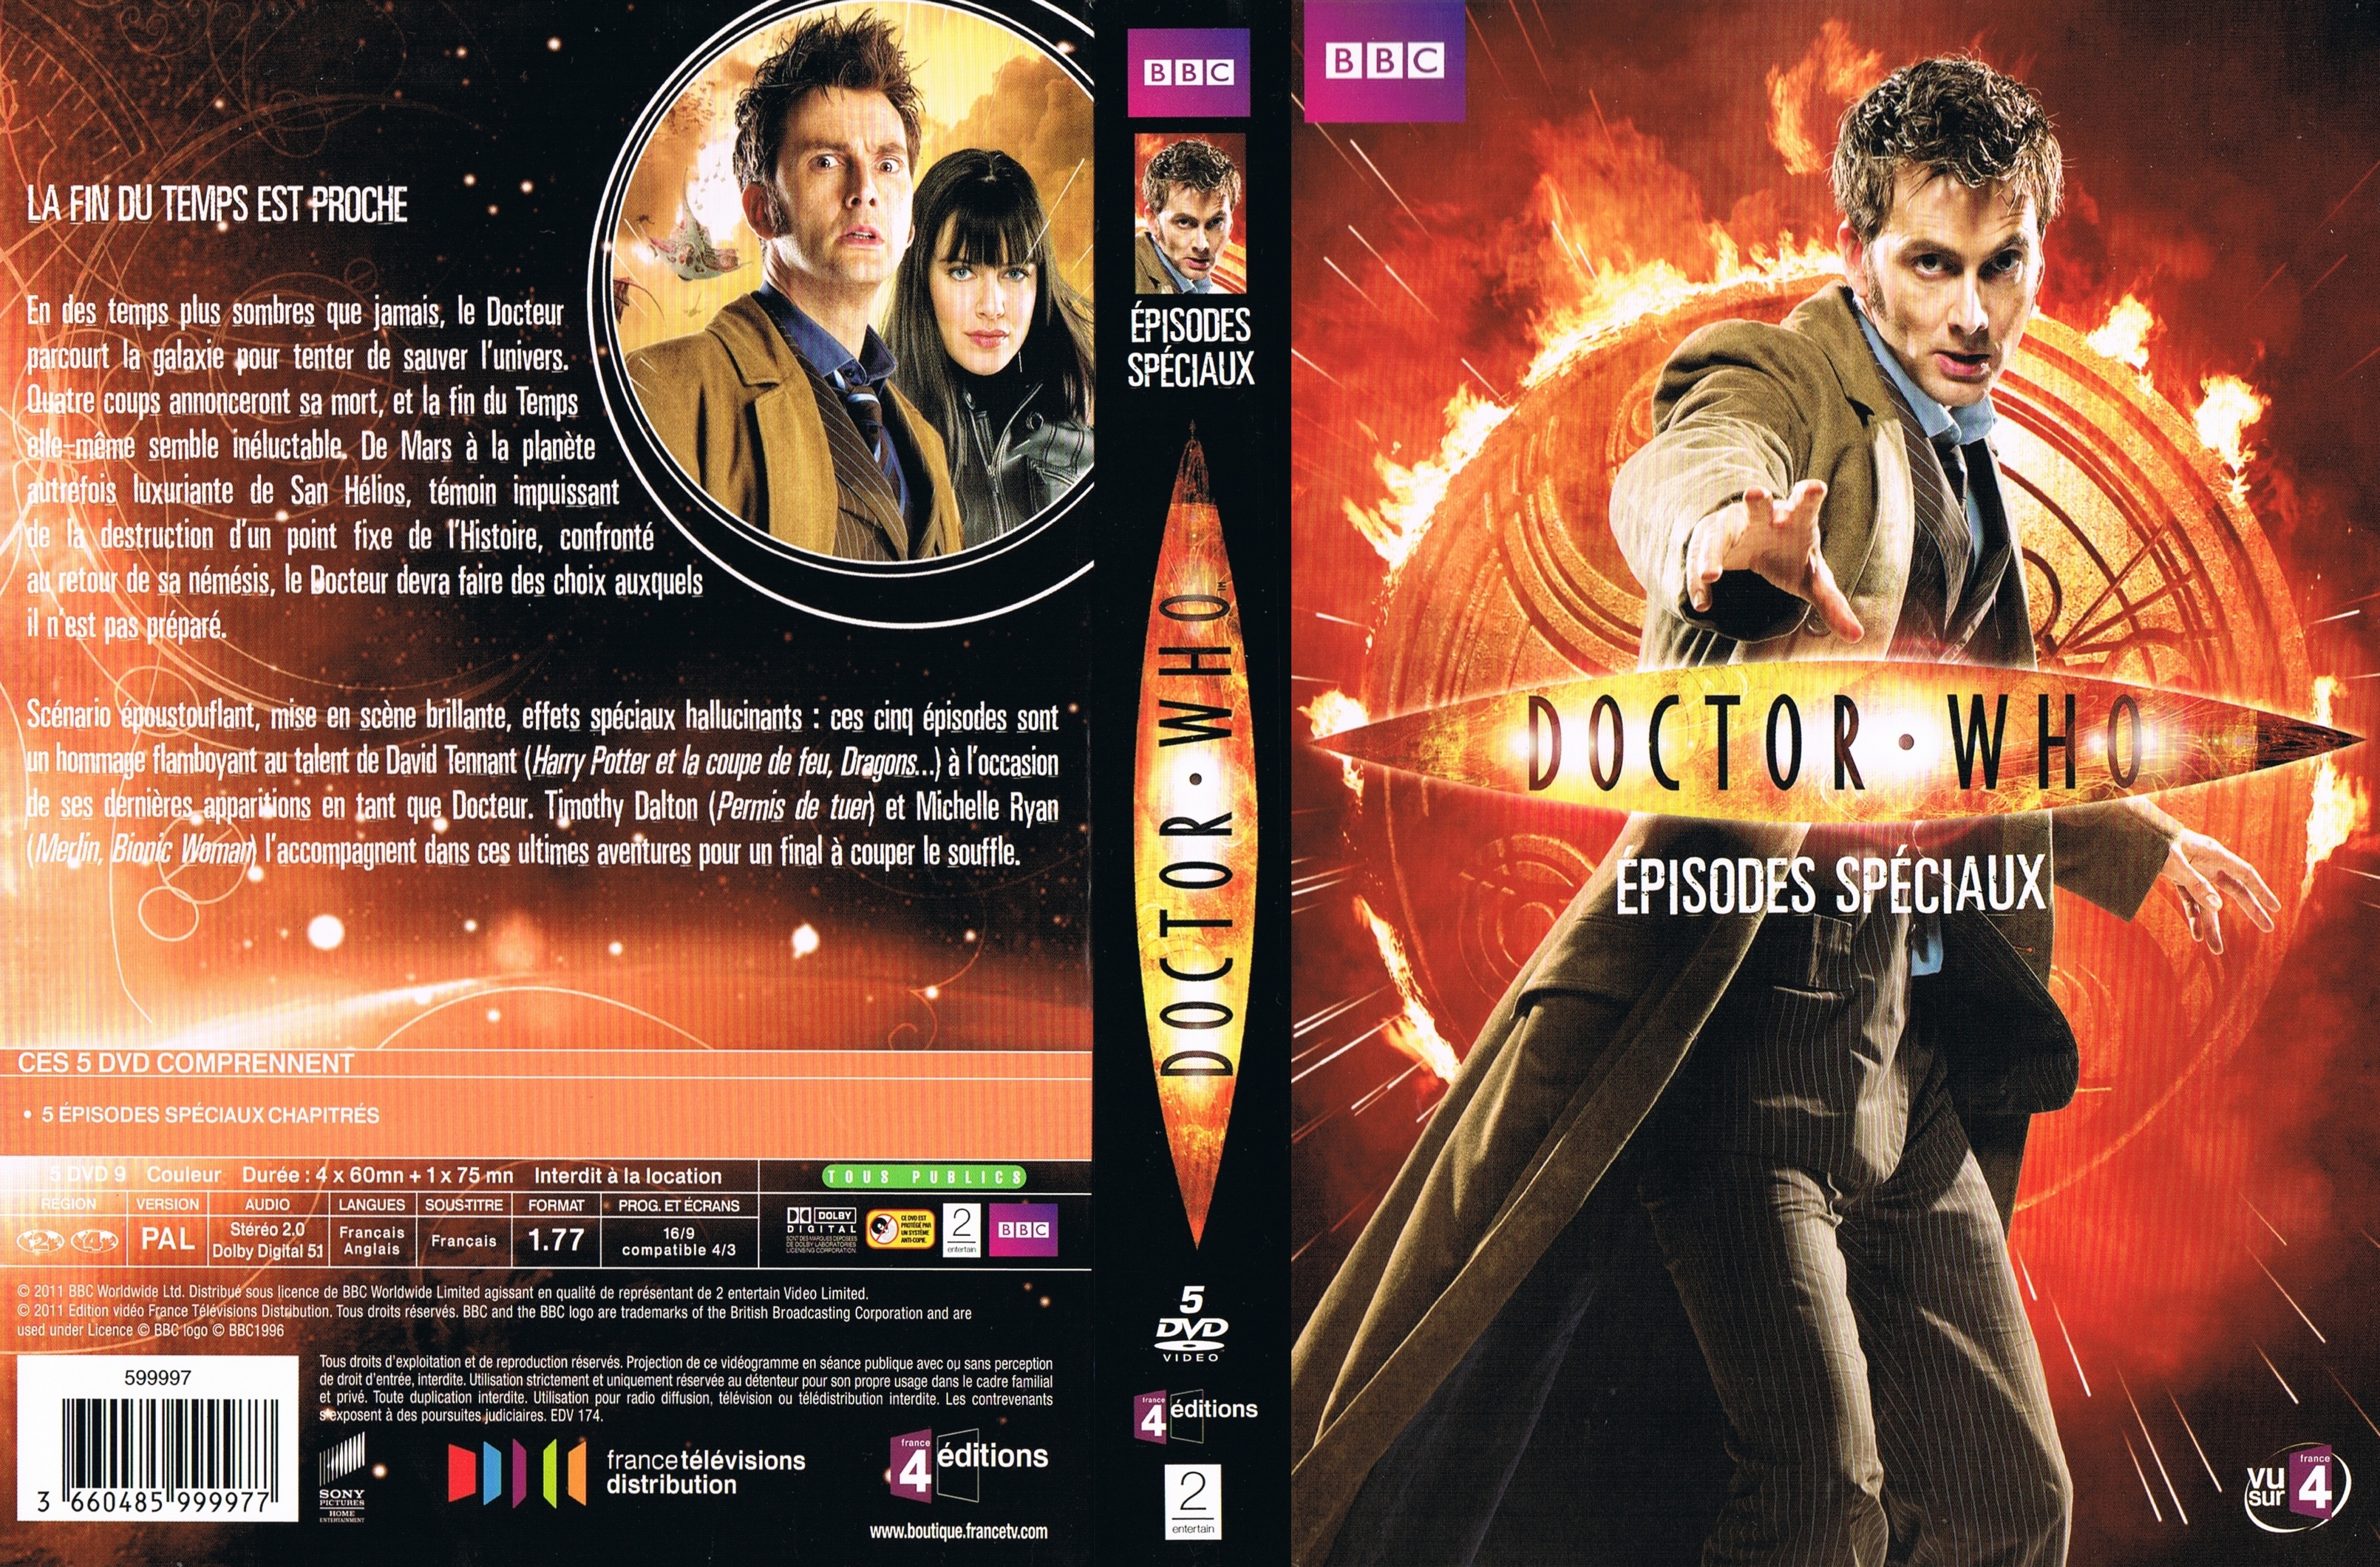 Jaquette DVD Doctor Who Episodes Speciaux COFFRET